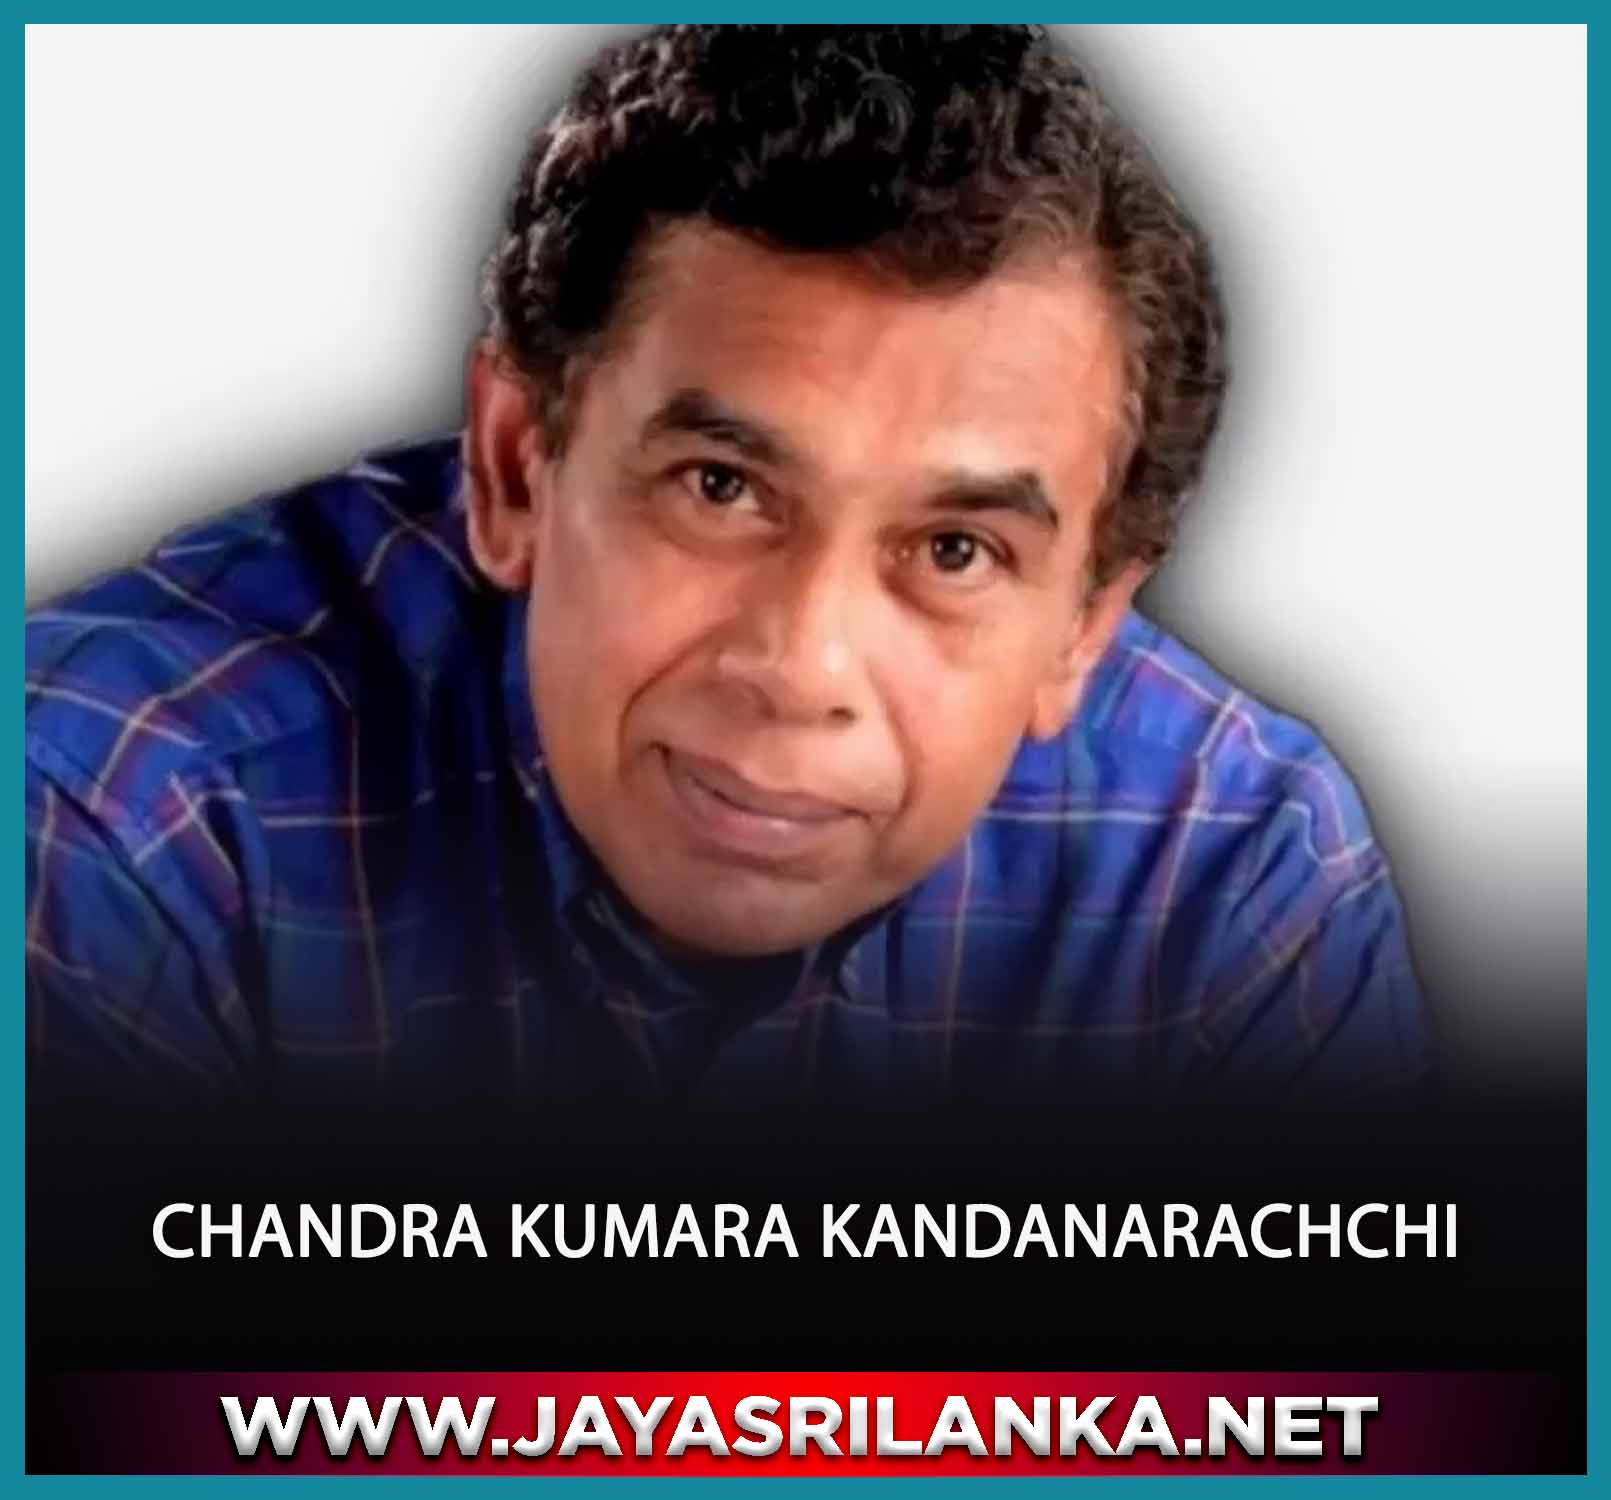 Ahas Yanayaka Piyasalana Wita - Chandra Kumara Kandanarachchi mp3 Image